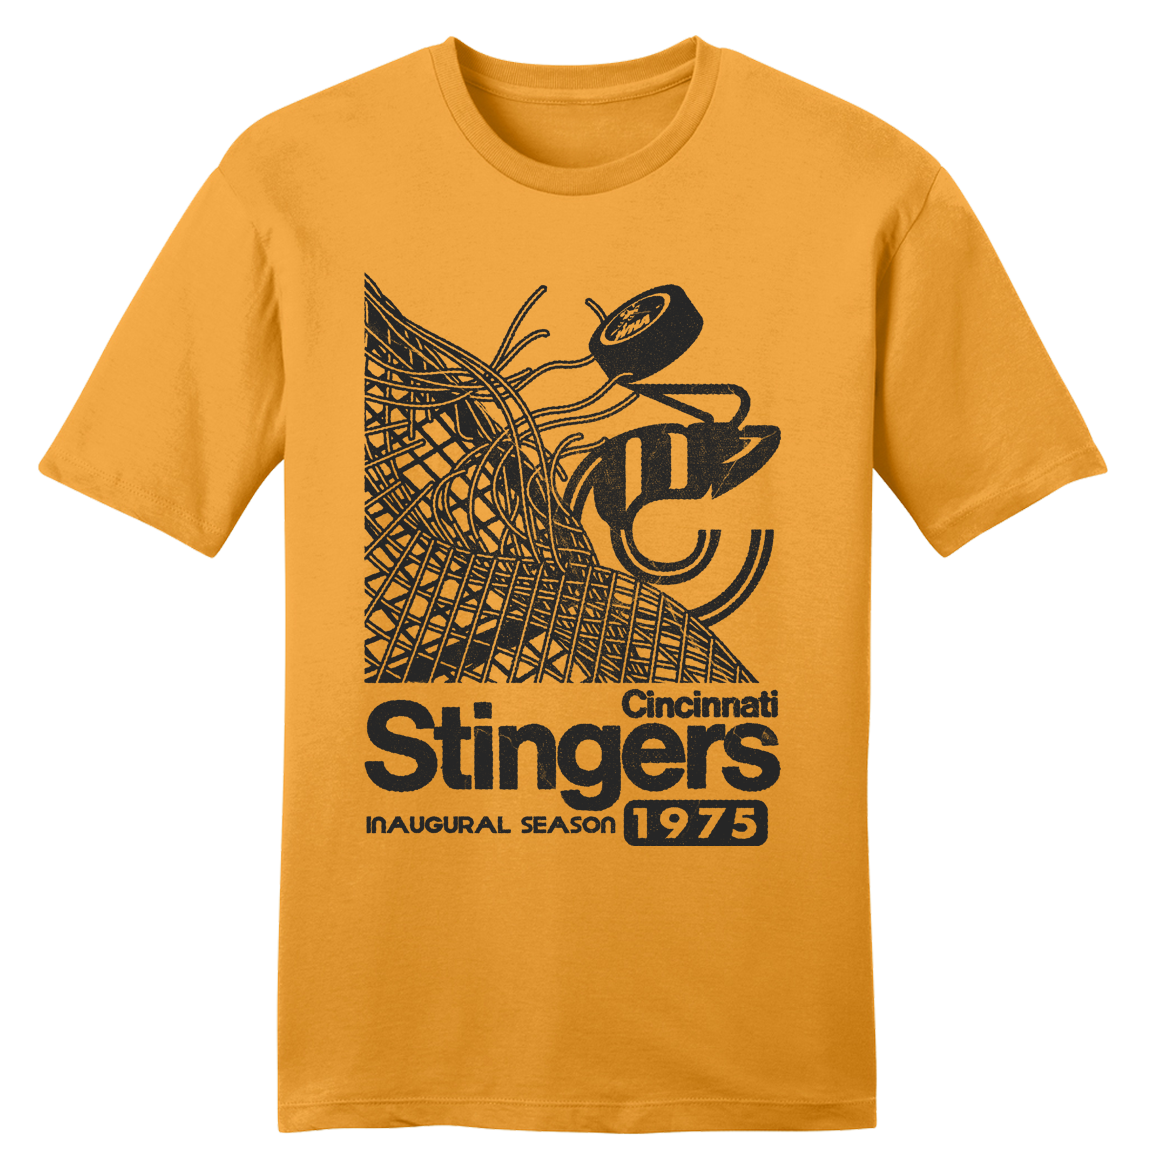 1975 Cincinnati Stingers Inaugural Season T-shirt